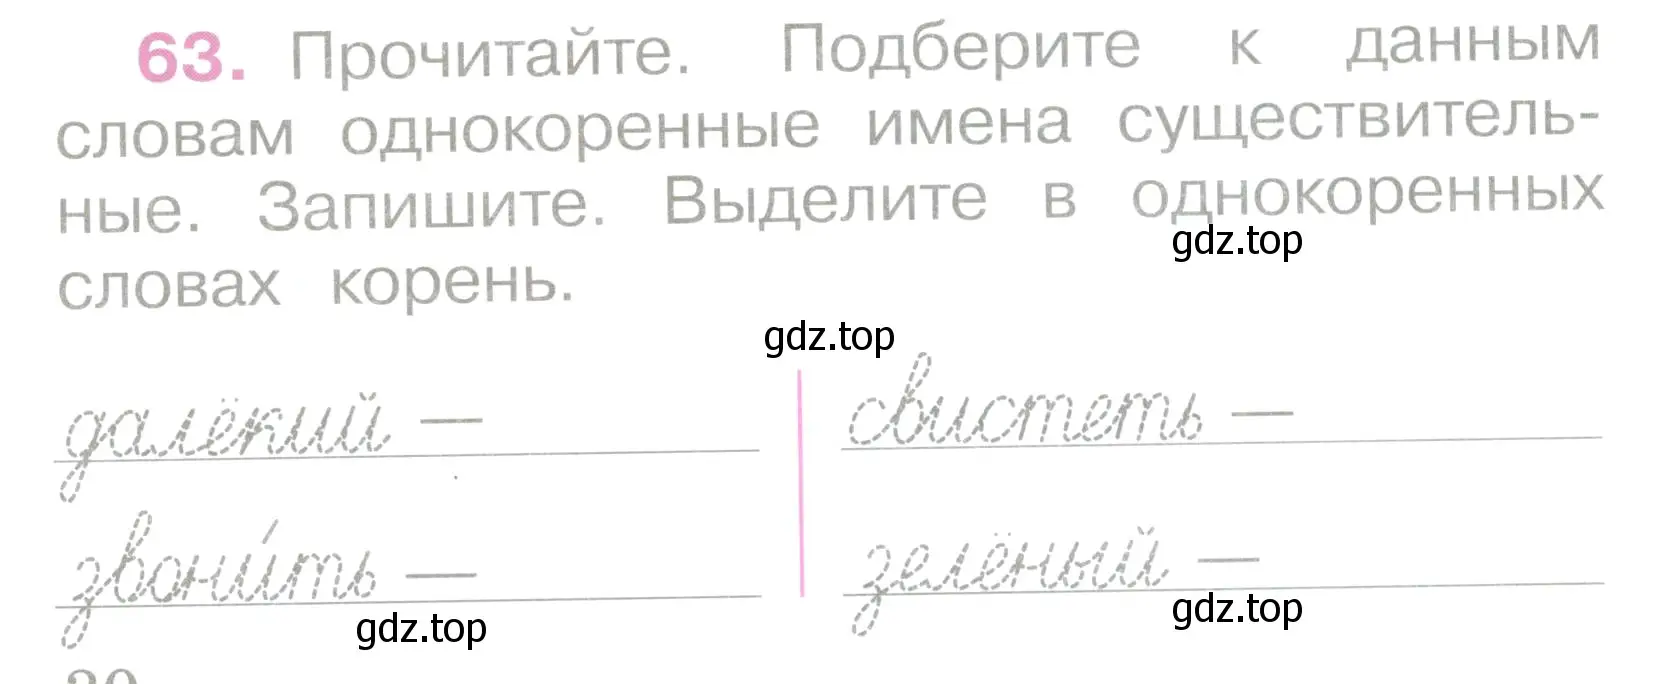 Условие номер 63 (страница 30) гдз по русскому языку 2 класс Канакина, рабочая тетрадь 2 часть